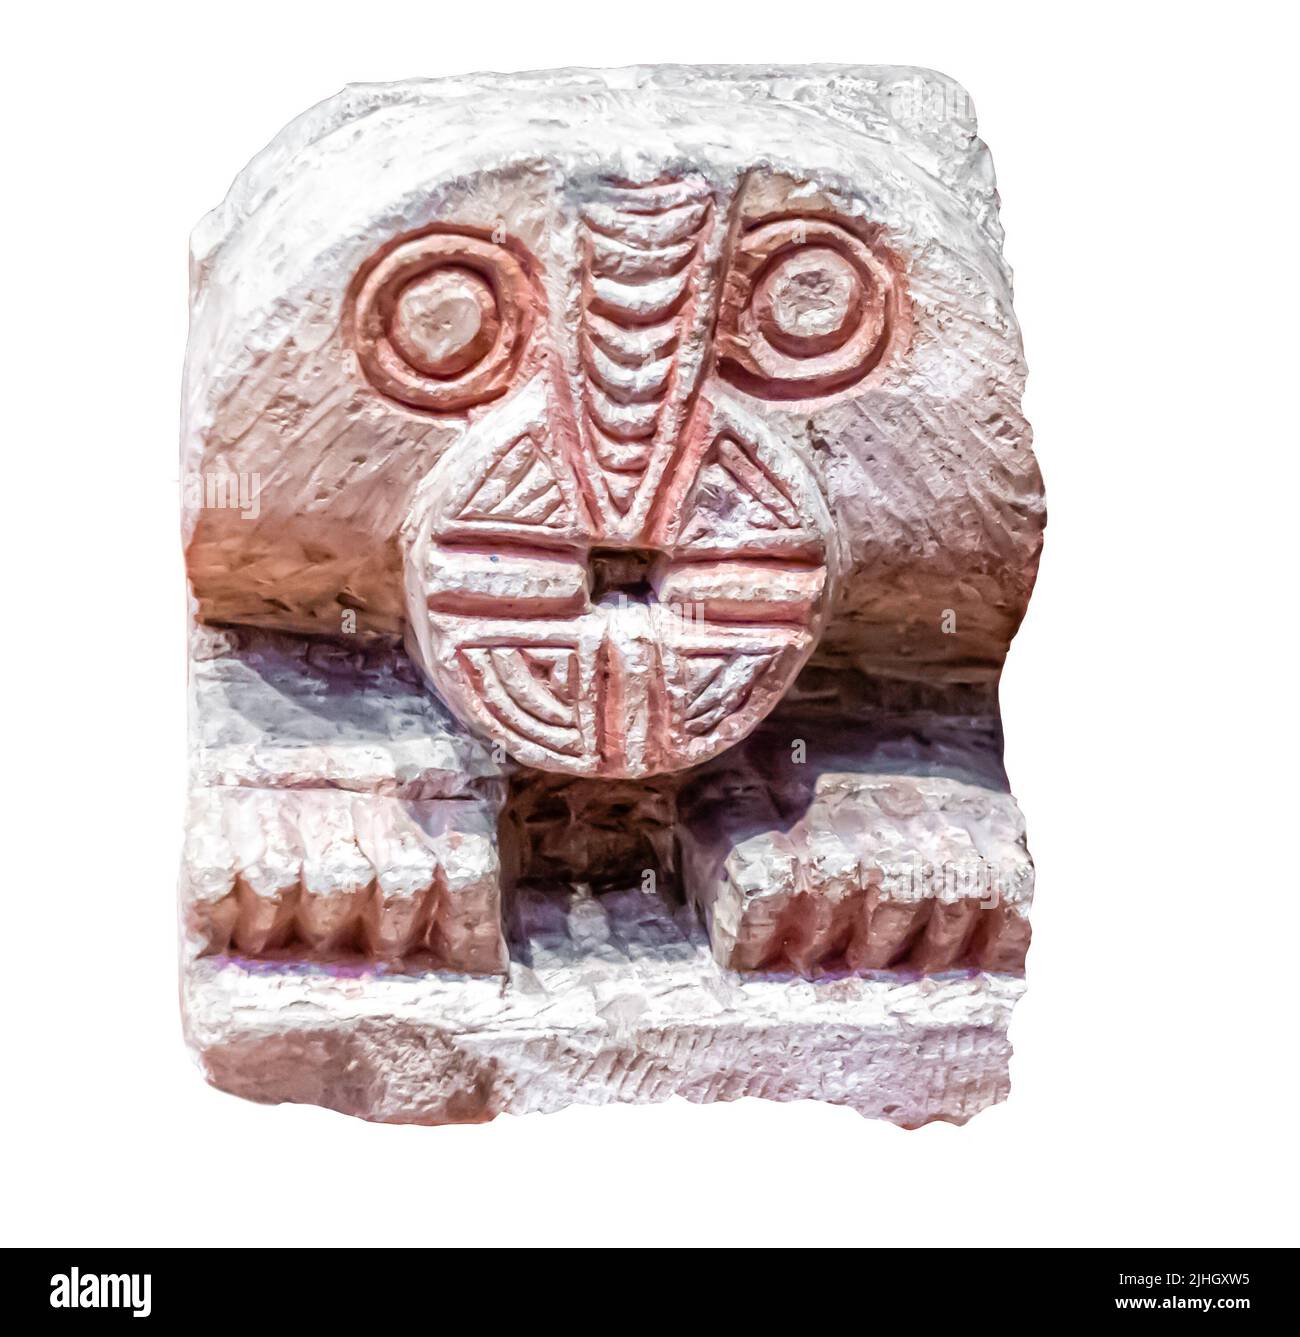 Stehen Sie für ein Wassergefäß in der Form eines Löwen - Kalkstein - Schnitzerei. Ägypten. 7. - 8. Jahrhundert Stockfoto